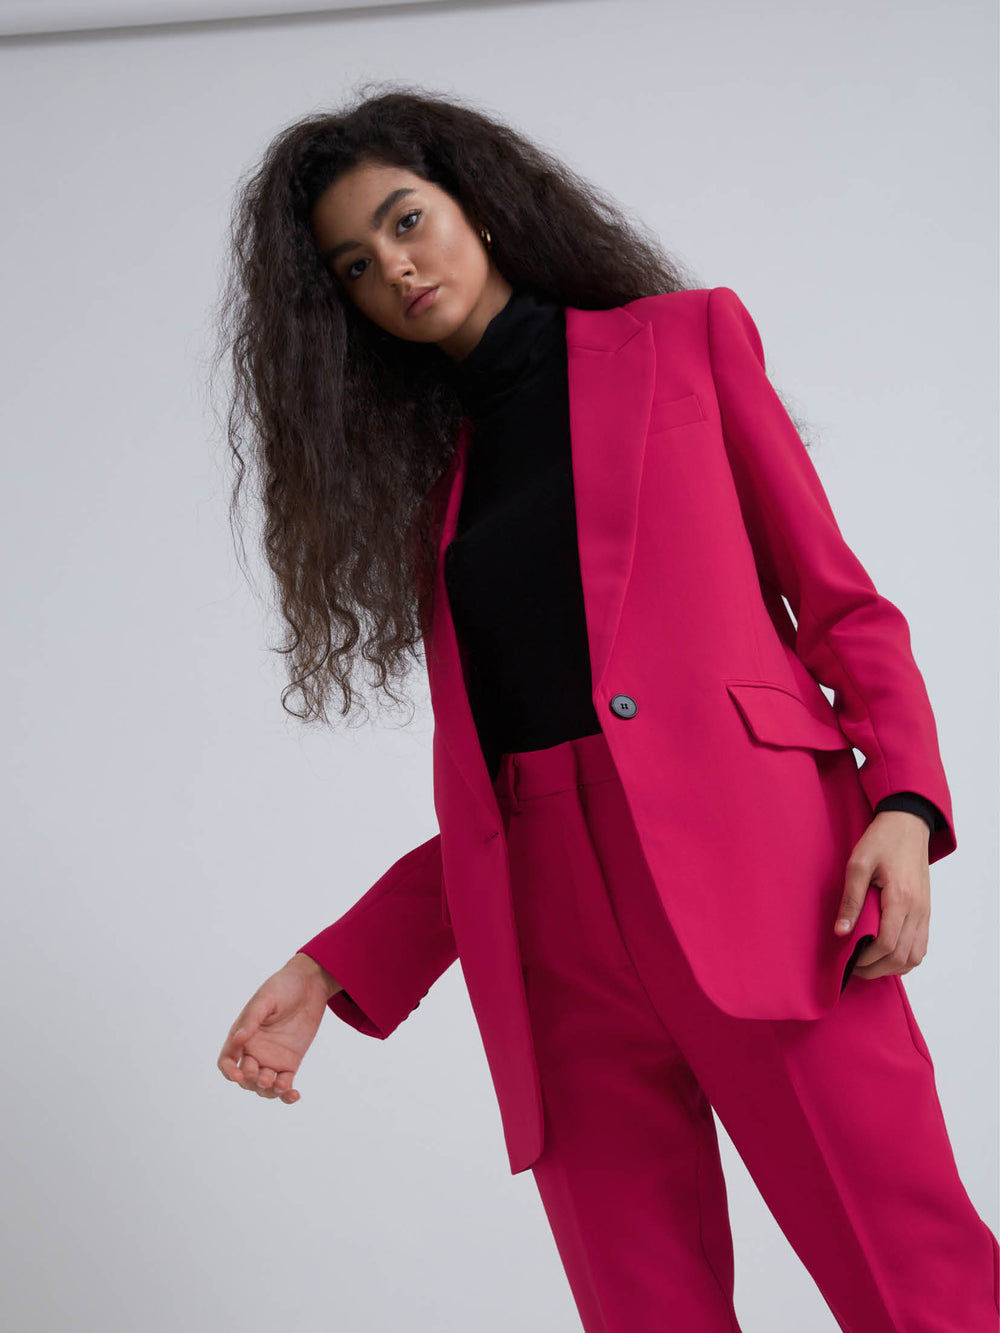 Bruuns Bazaar Women CindySusBBFrida blazer Blazer Virtual pink